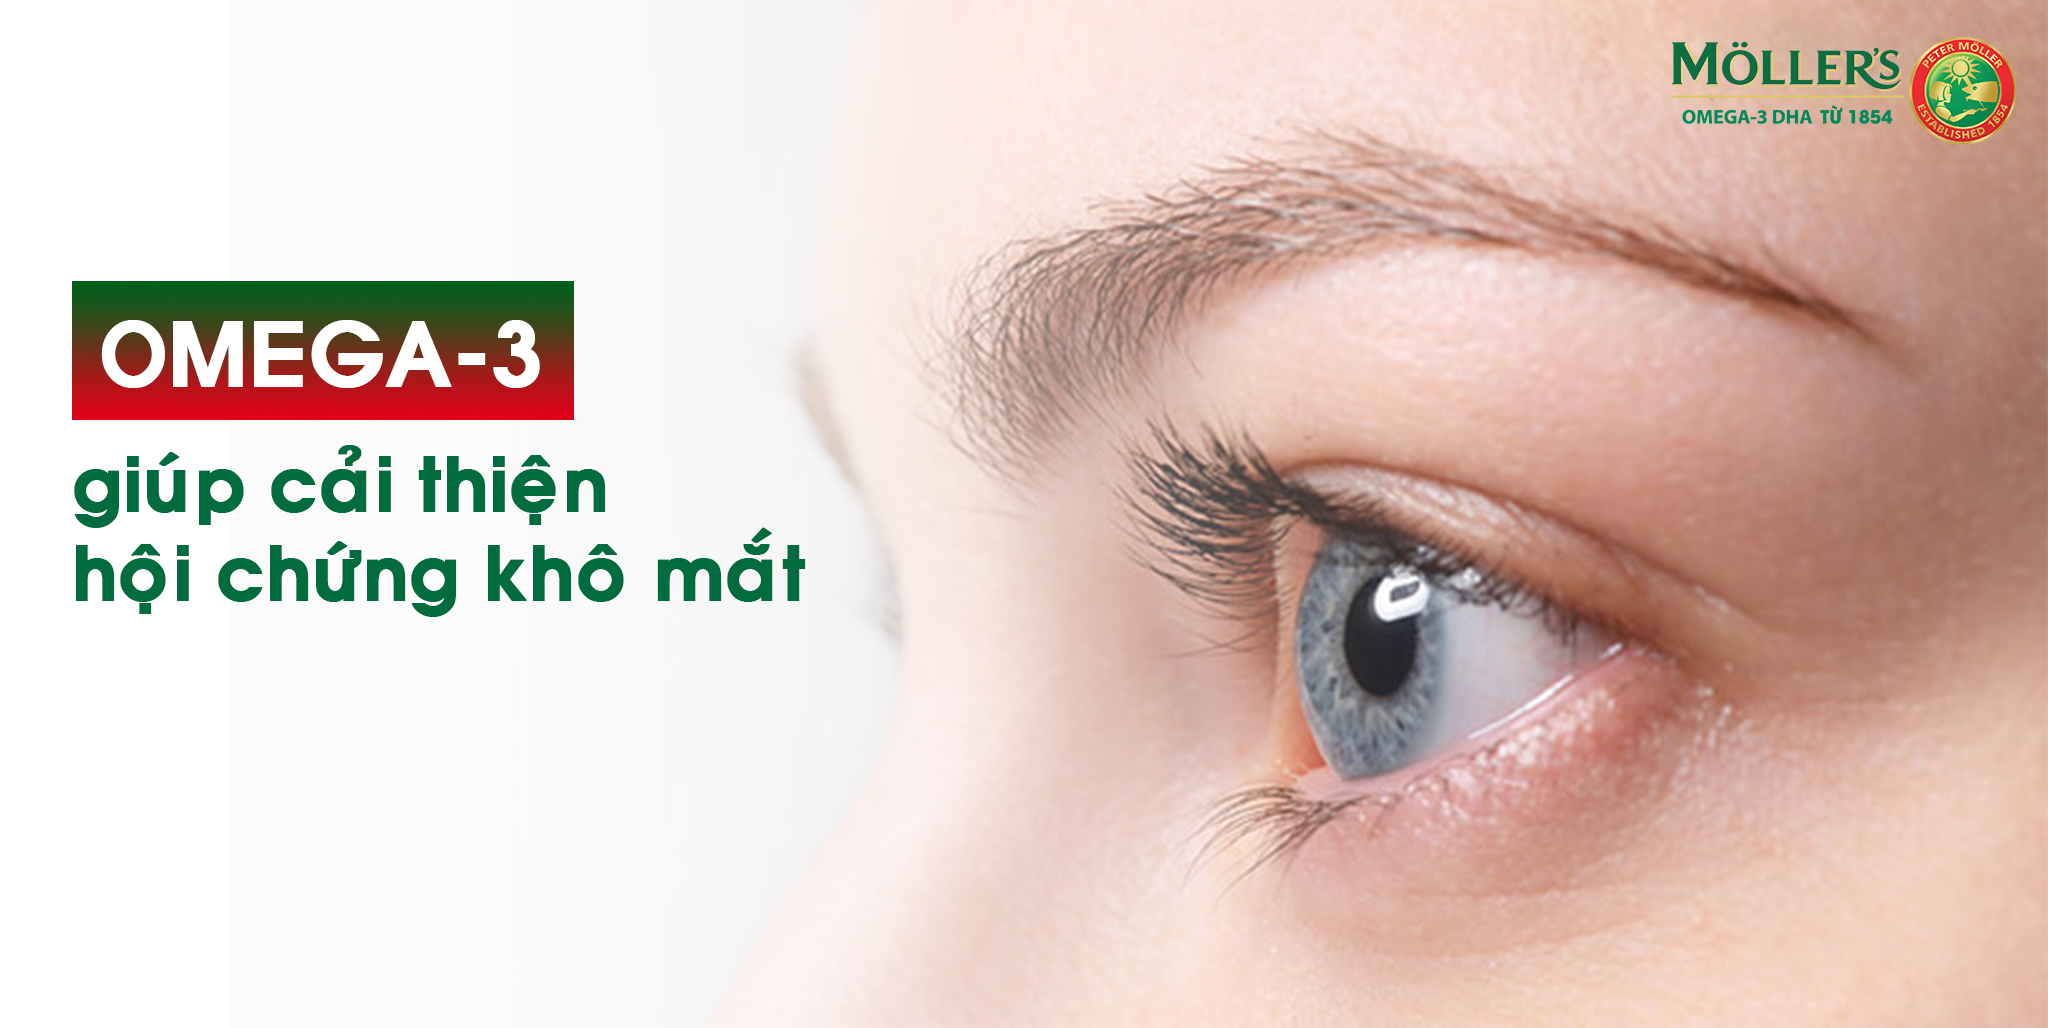 Omega-3 giúp cải thiện hội chứng khô mắt